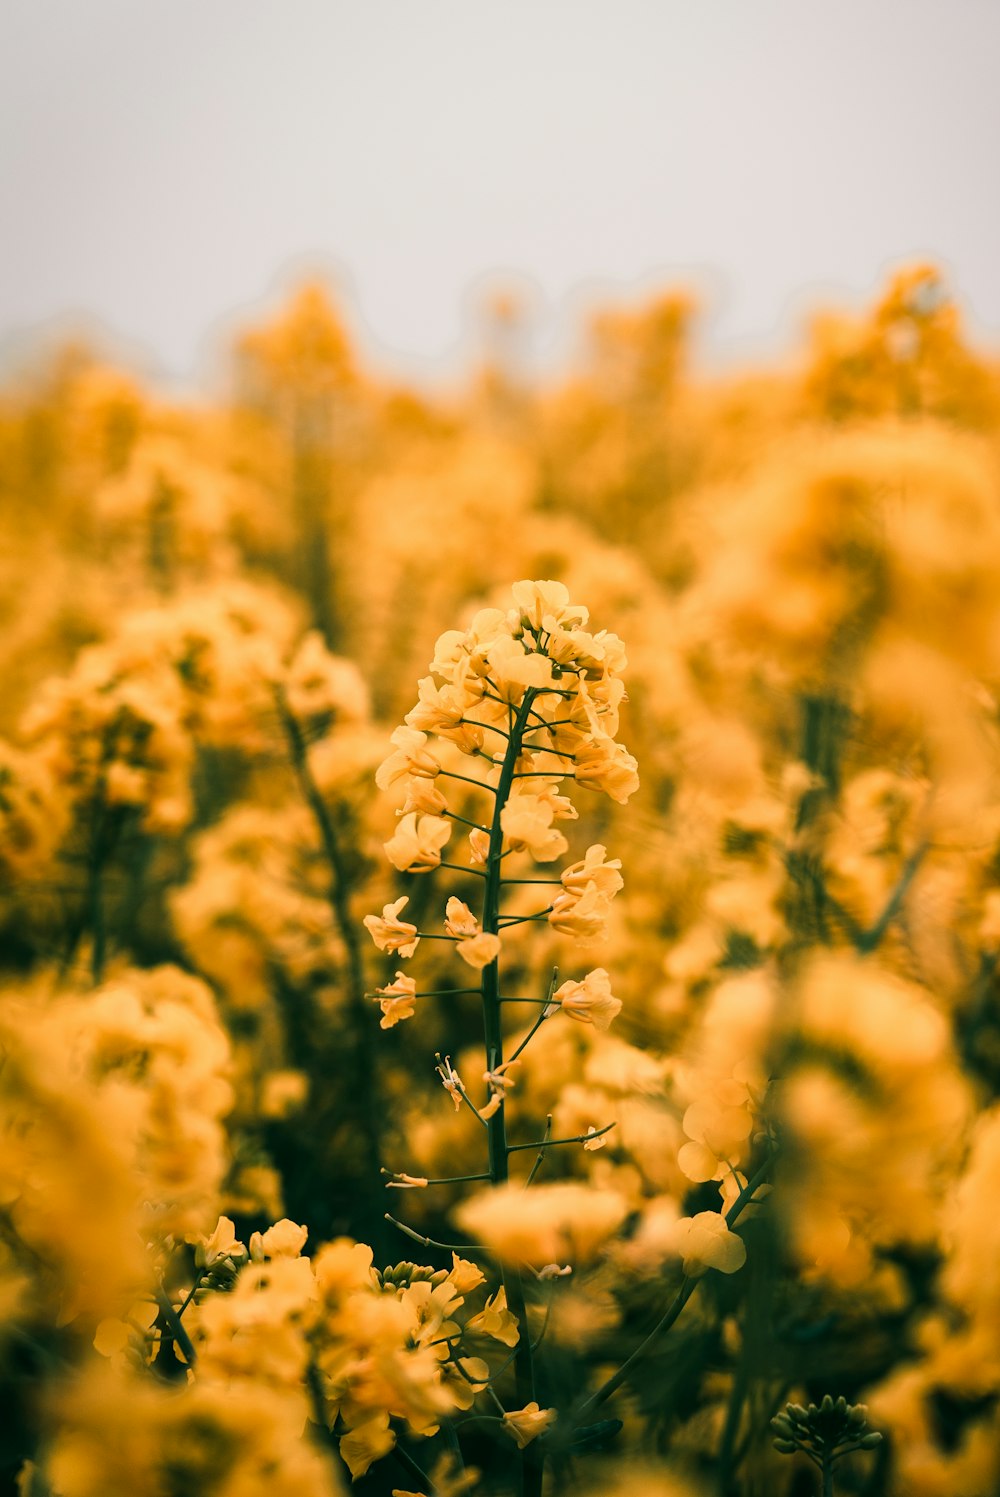 ソフトフォーカス写真の黄色いクラスターの花